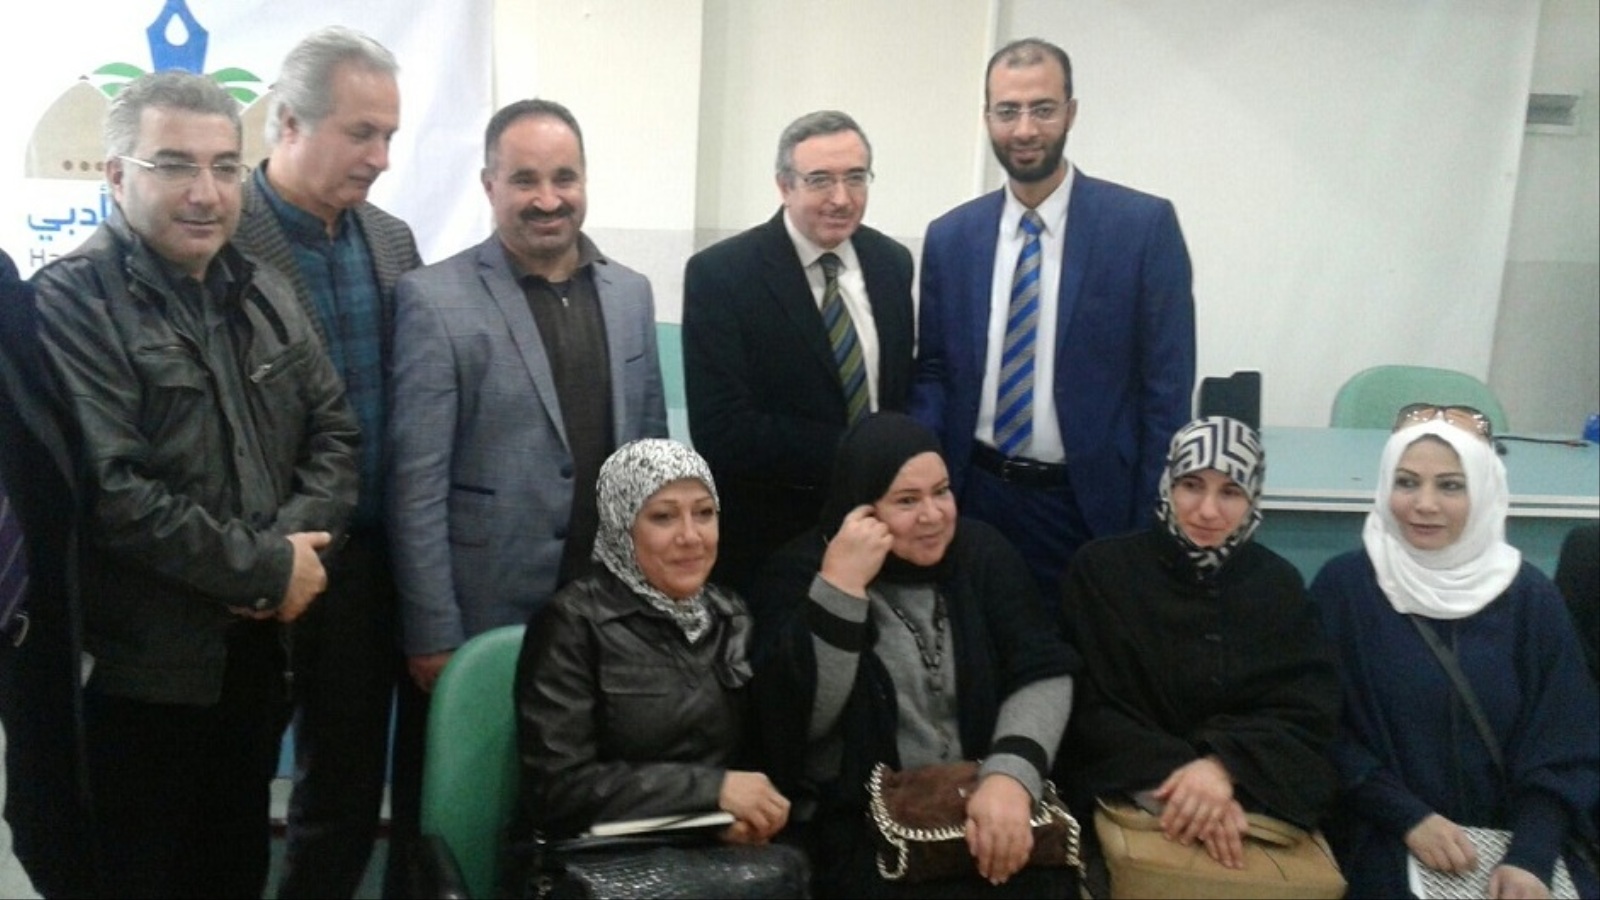 ‪صورة تجمع أعضاء الهيئة التأسيسية لملتقى حران الأدبي‬ (الجزيرة)